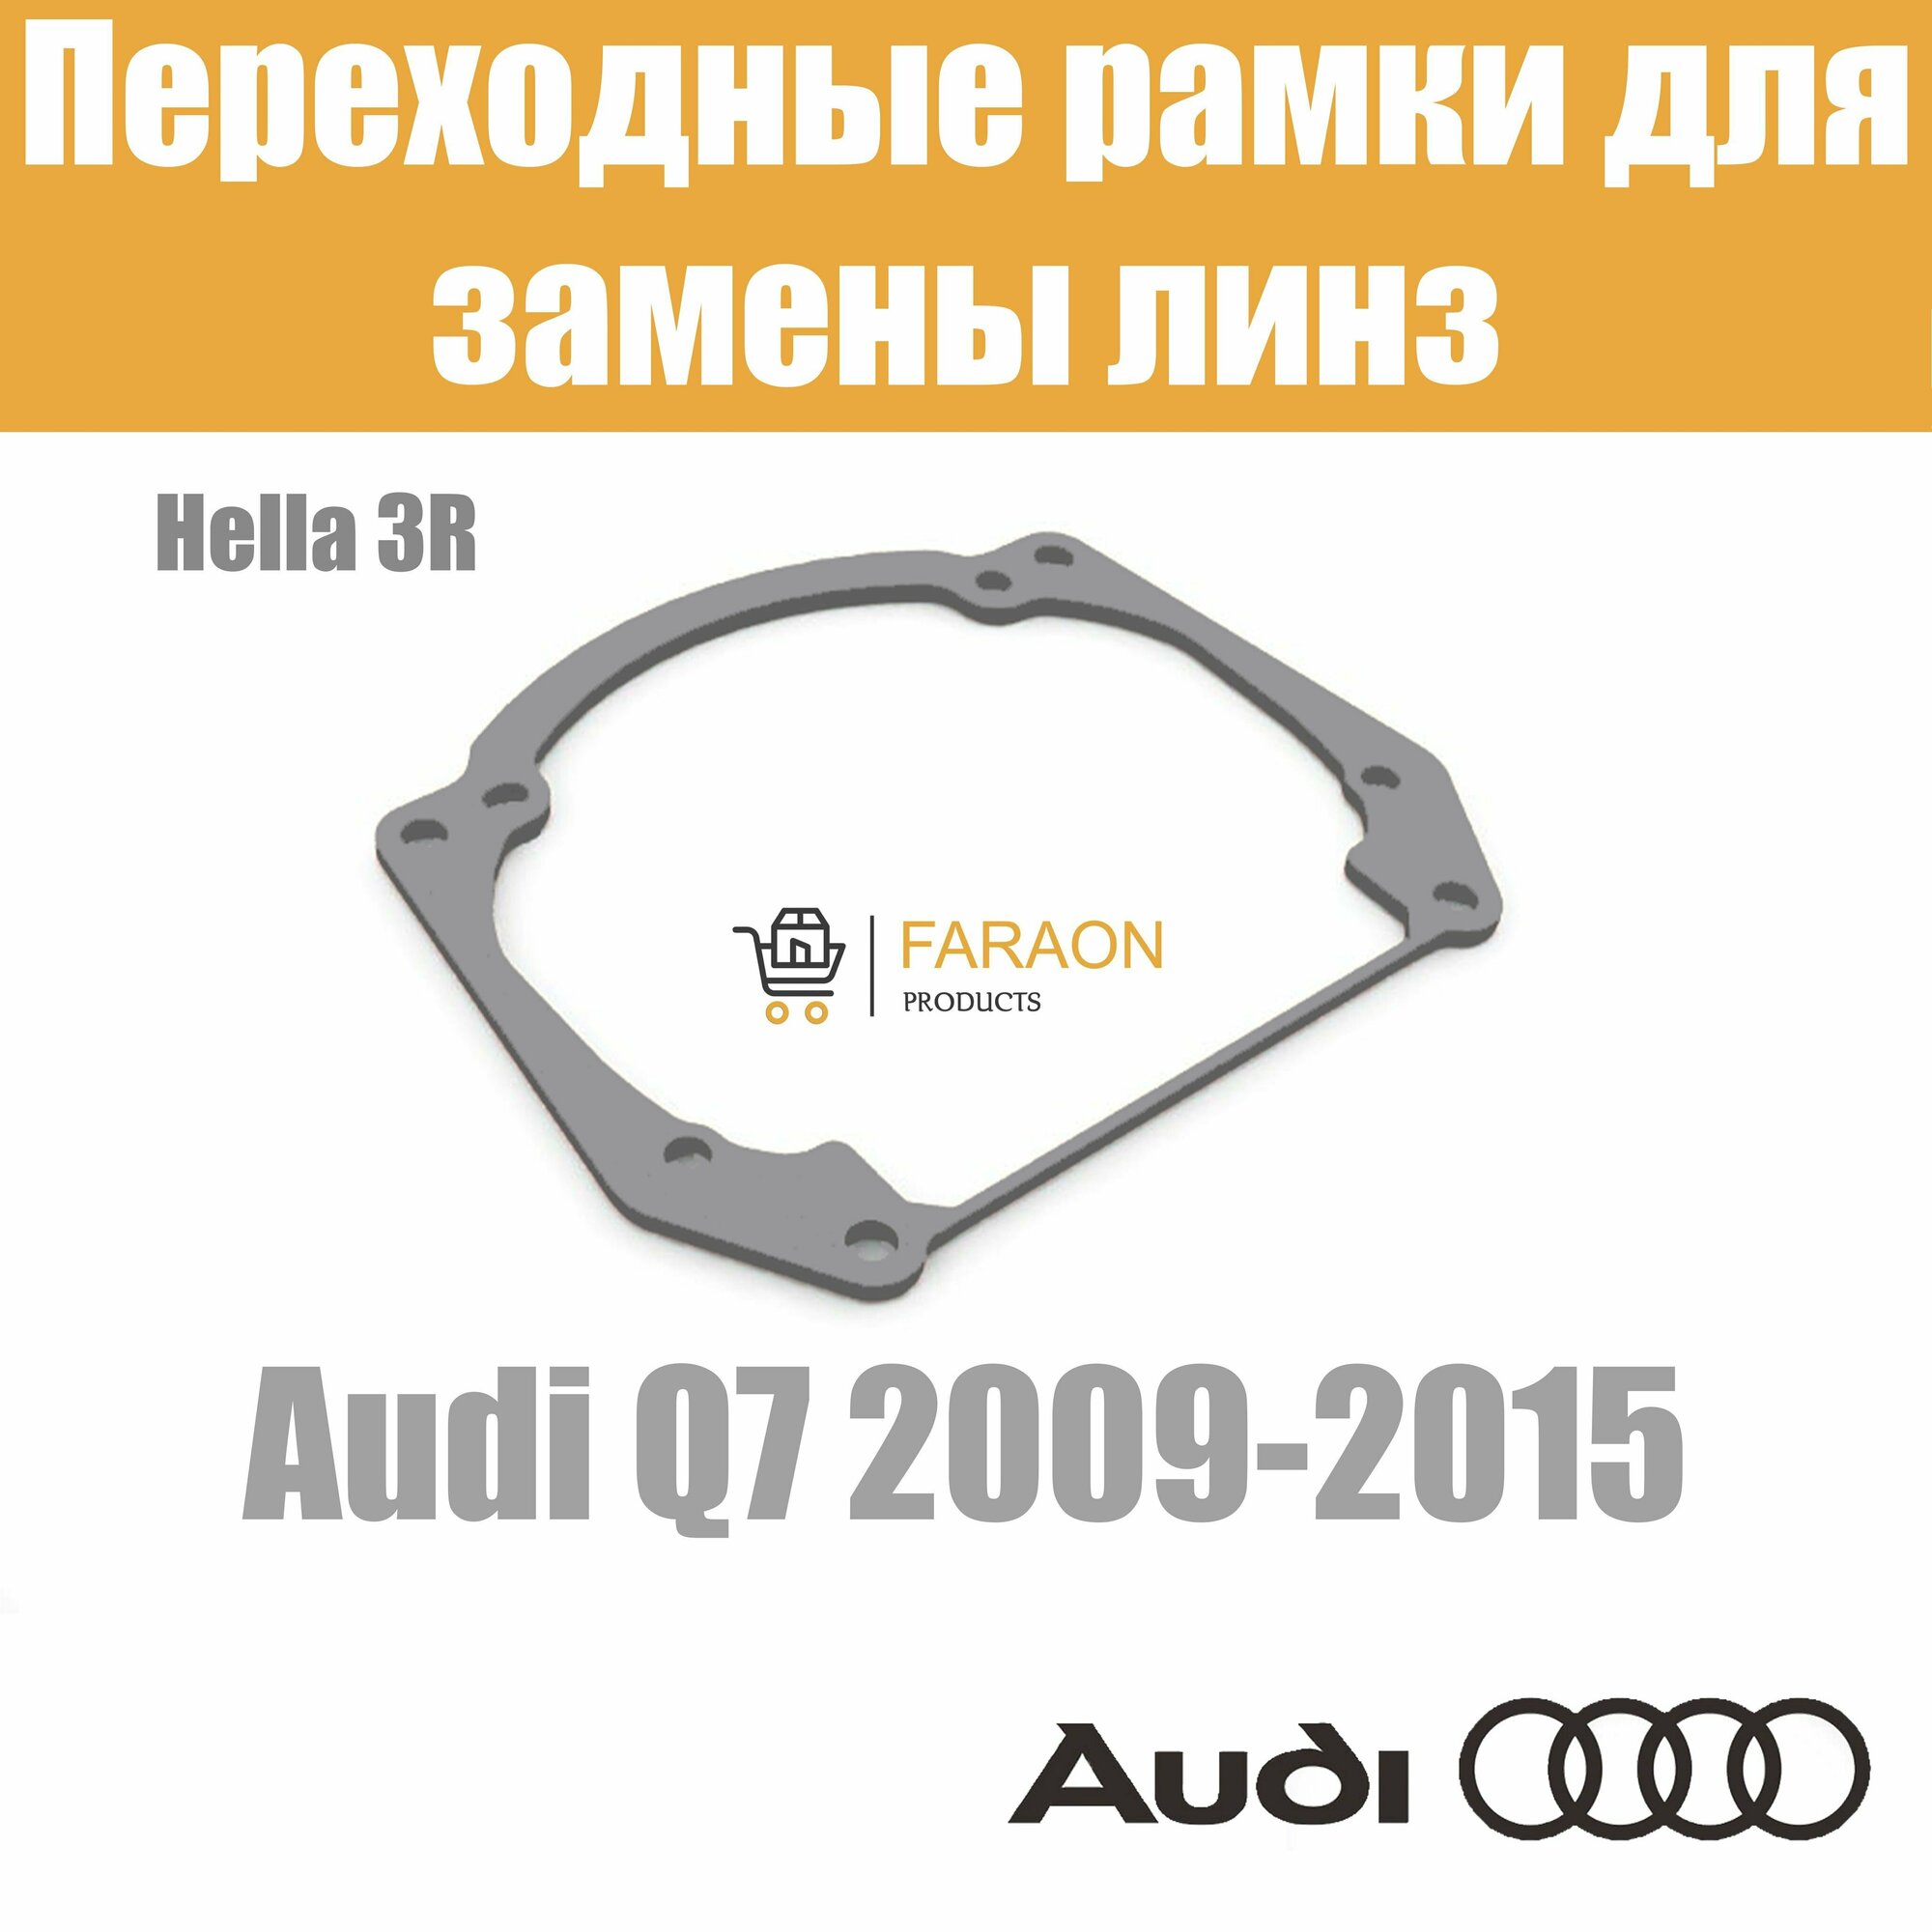 Переходные рамки для замены линз в фарах Audi Q7 2009-2015 Крепление Hella 3R